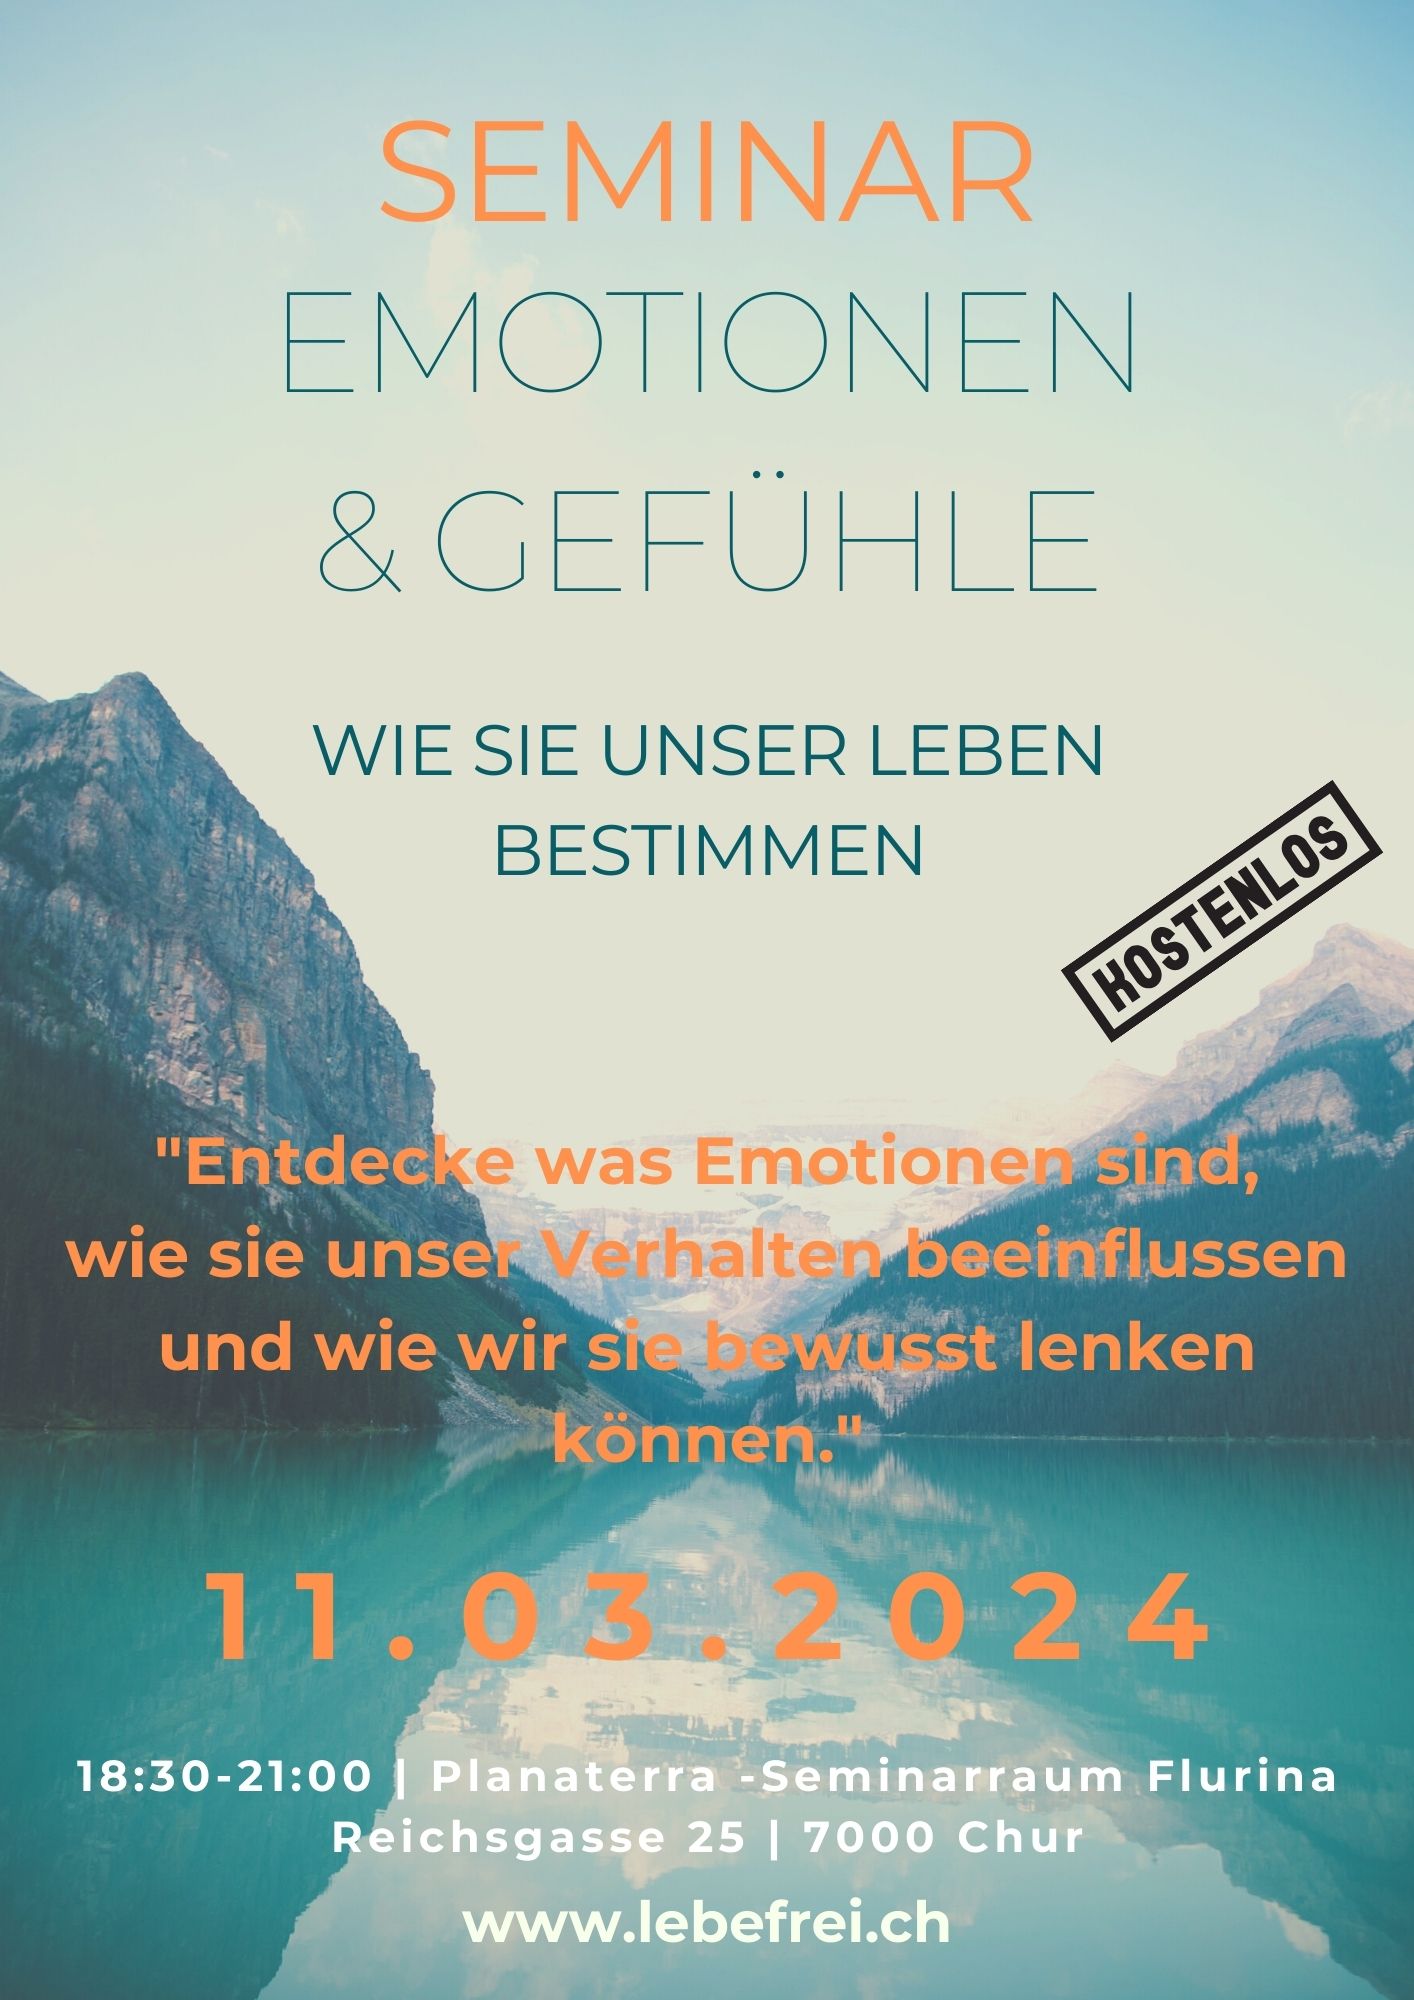 Kostenloses Seminar am 11. März 2024: Entdecke deine Welt der Emotionen und Gefühle!